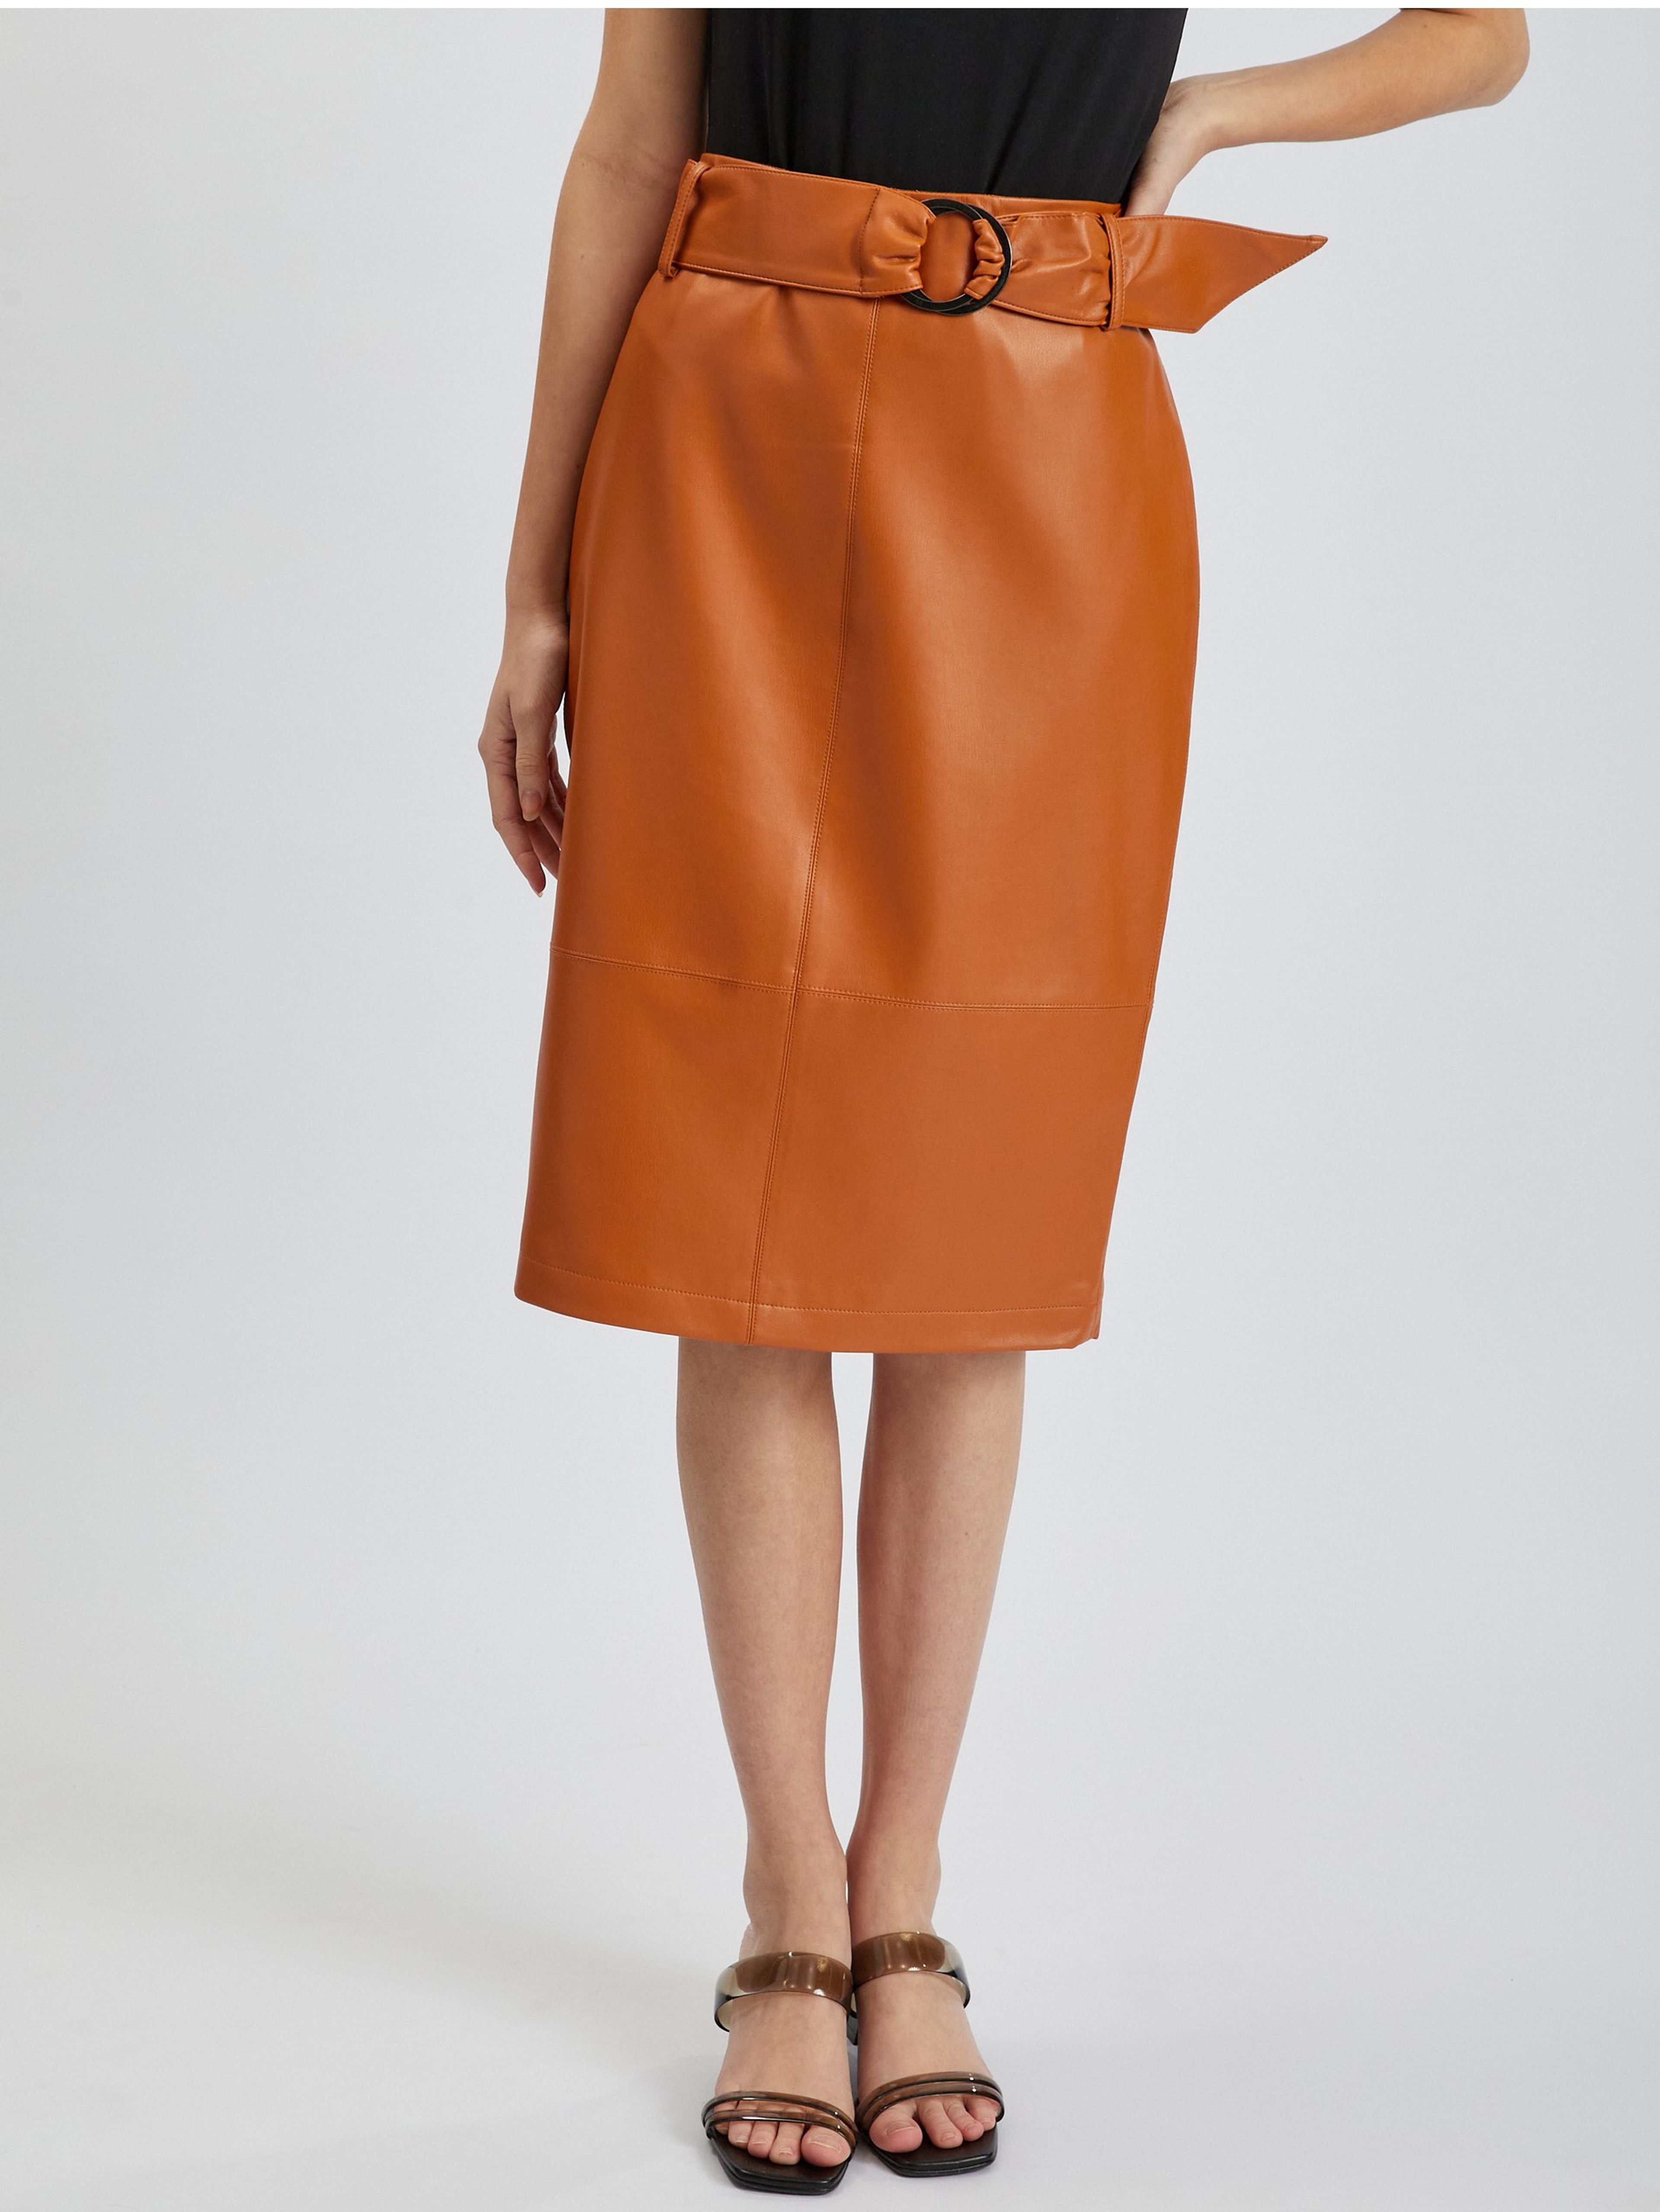 Hnedá dámska koženková sukňa s rukávmi ORSAY